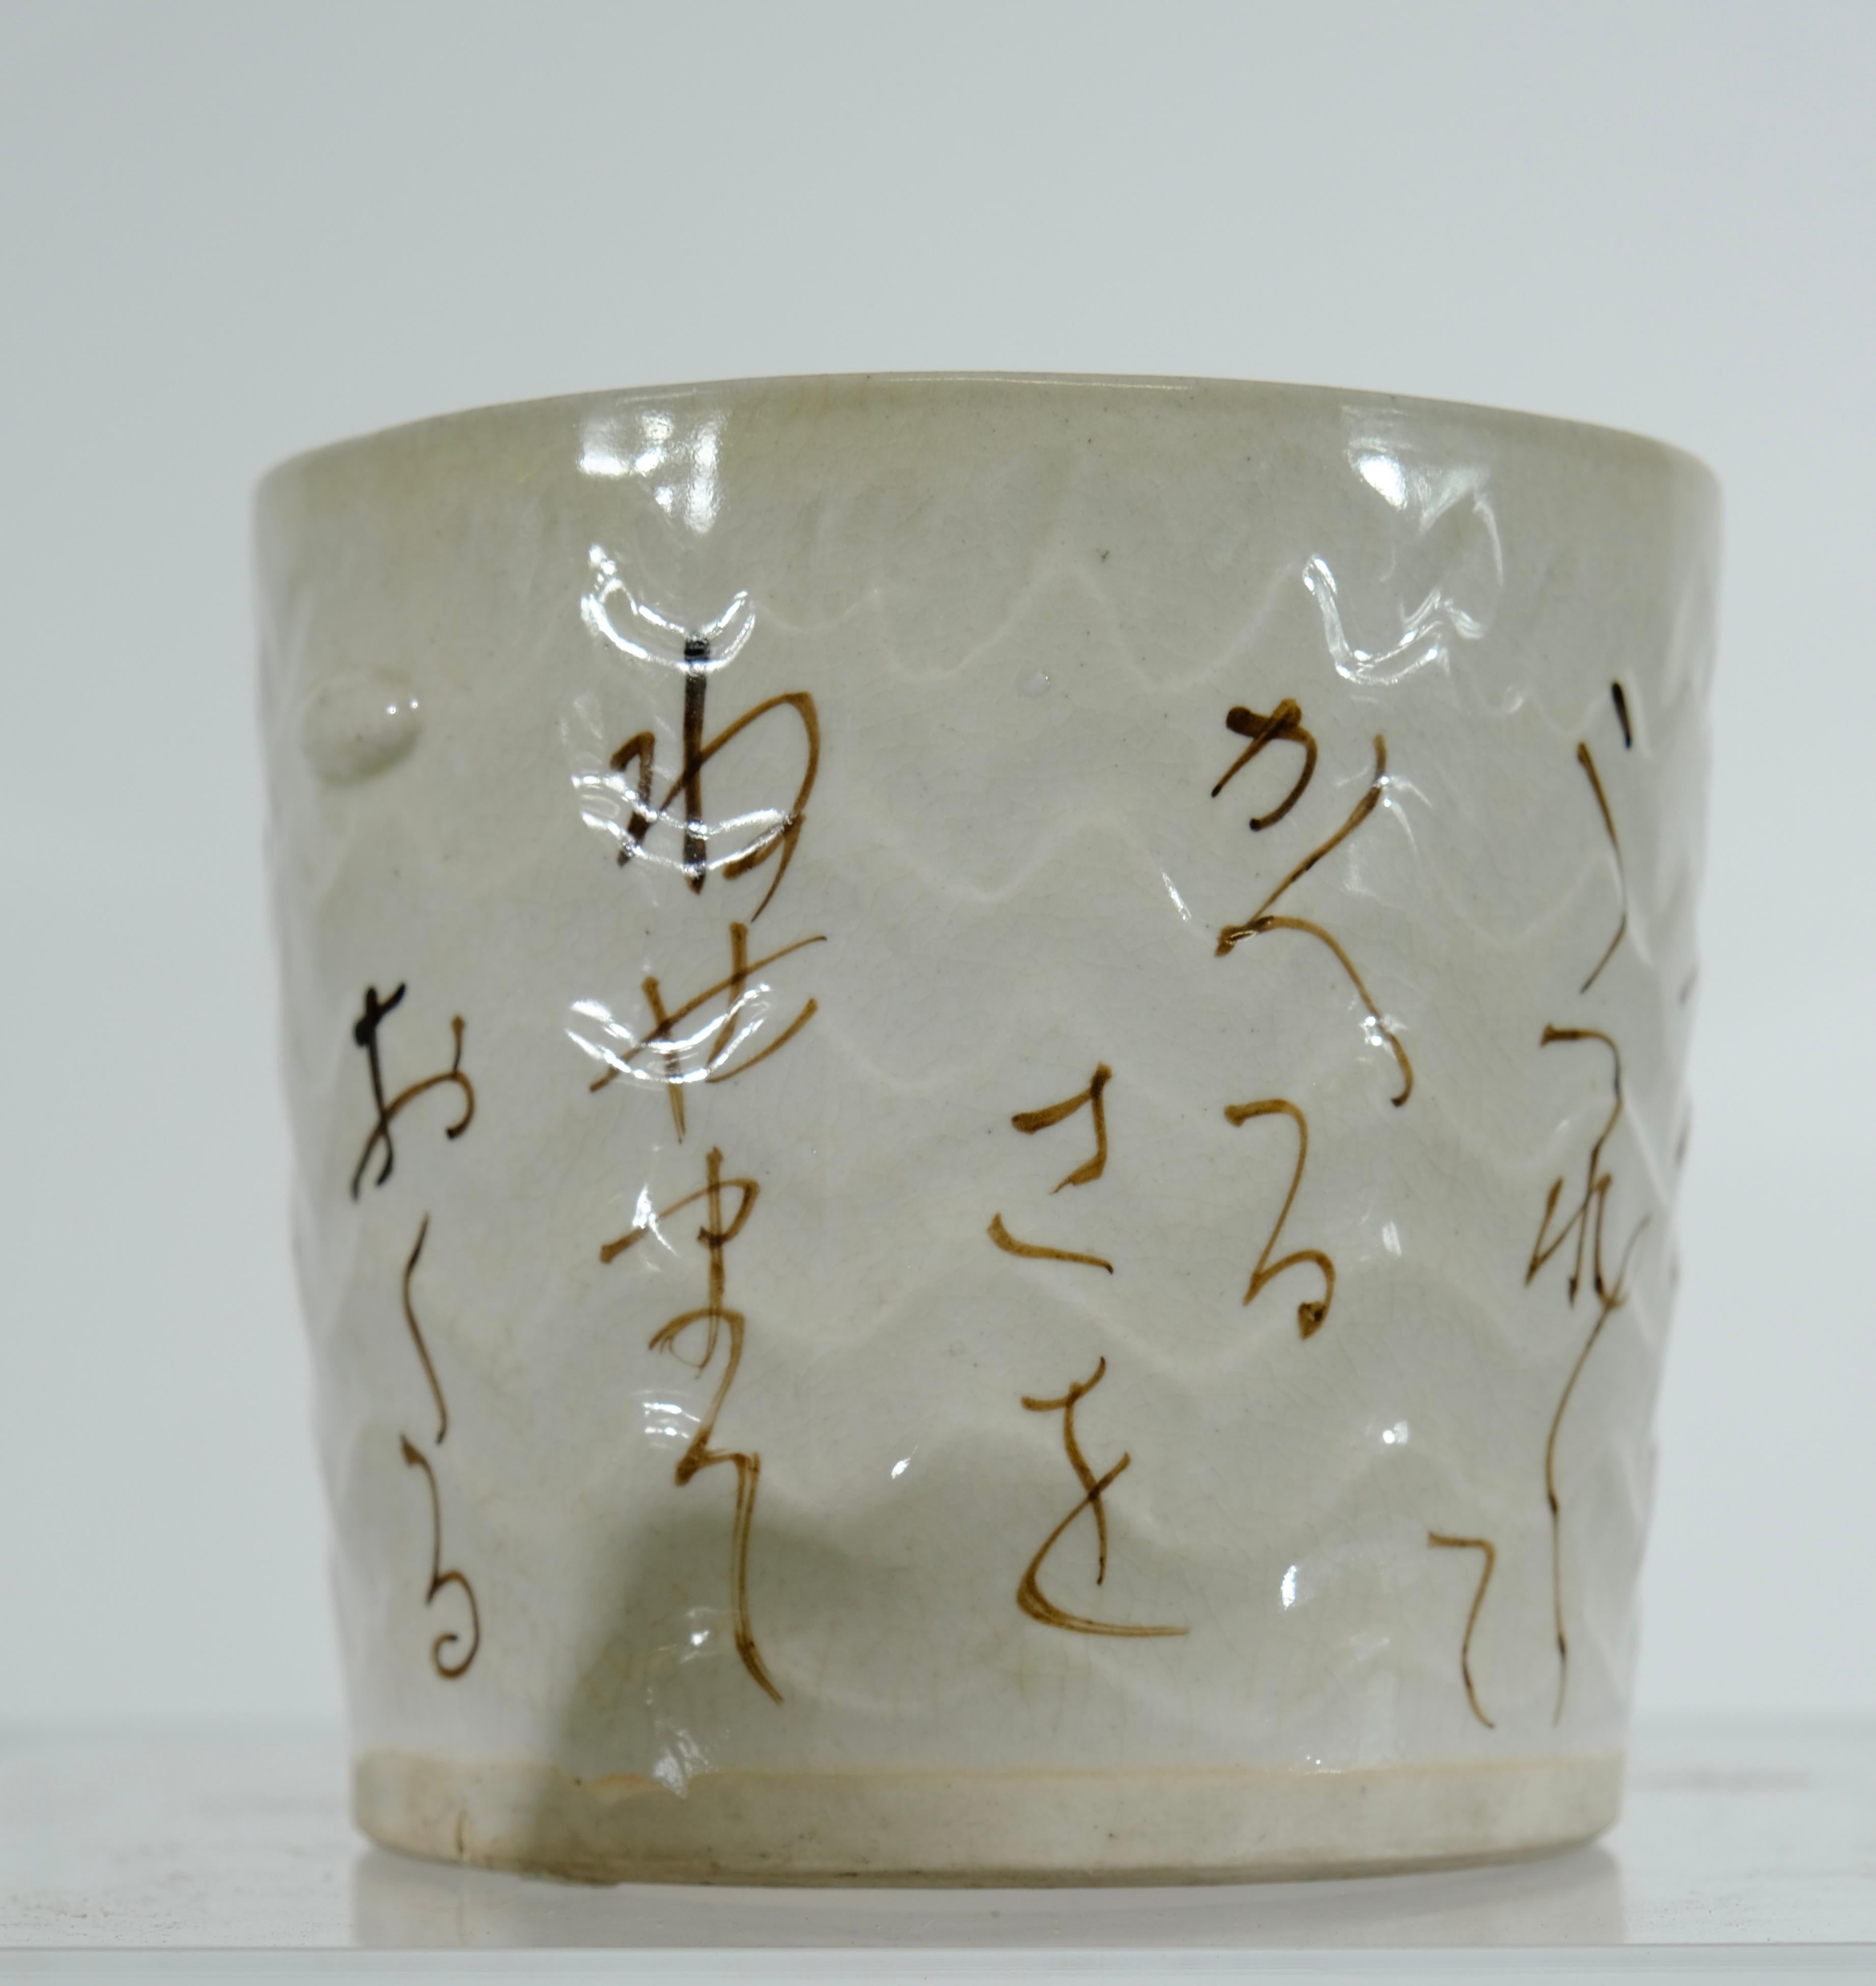 Eine charmante japanische Schale aus glasiertem gebranntem Ton. Beige Farbe mit Gedichten darauf geschrieben. es kommt in seiner ursprünglichen Holzkiste.